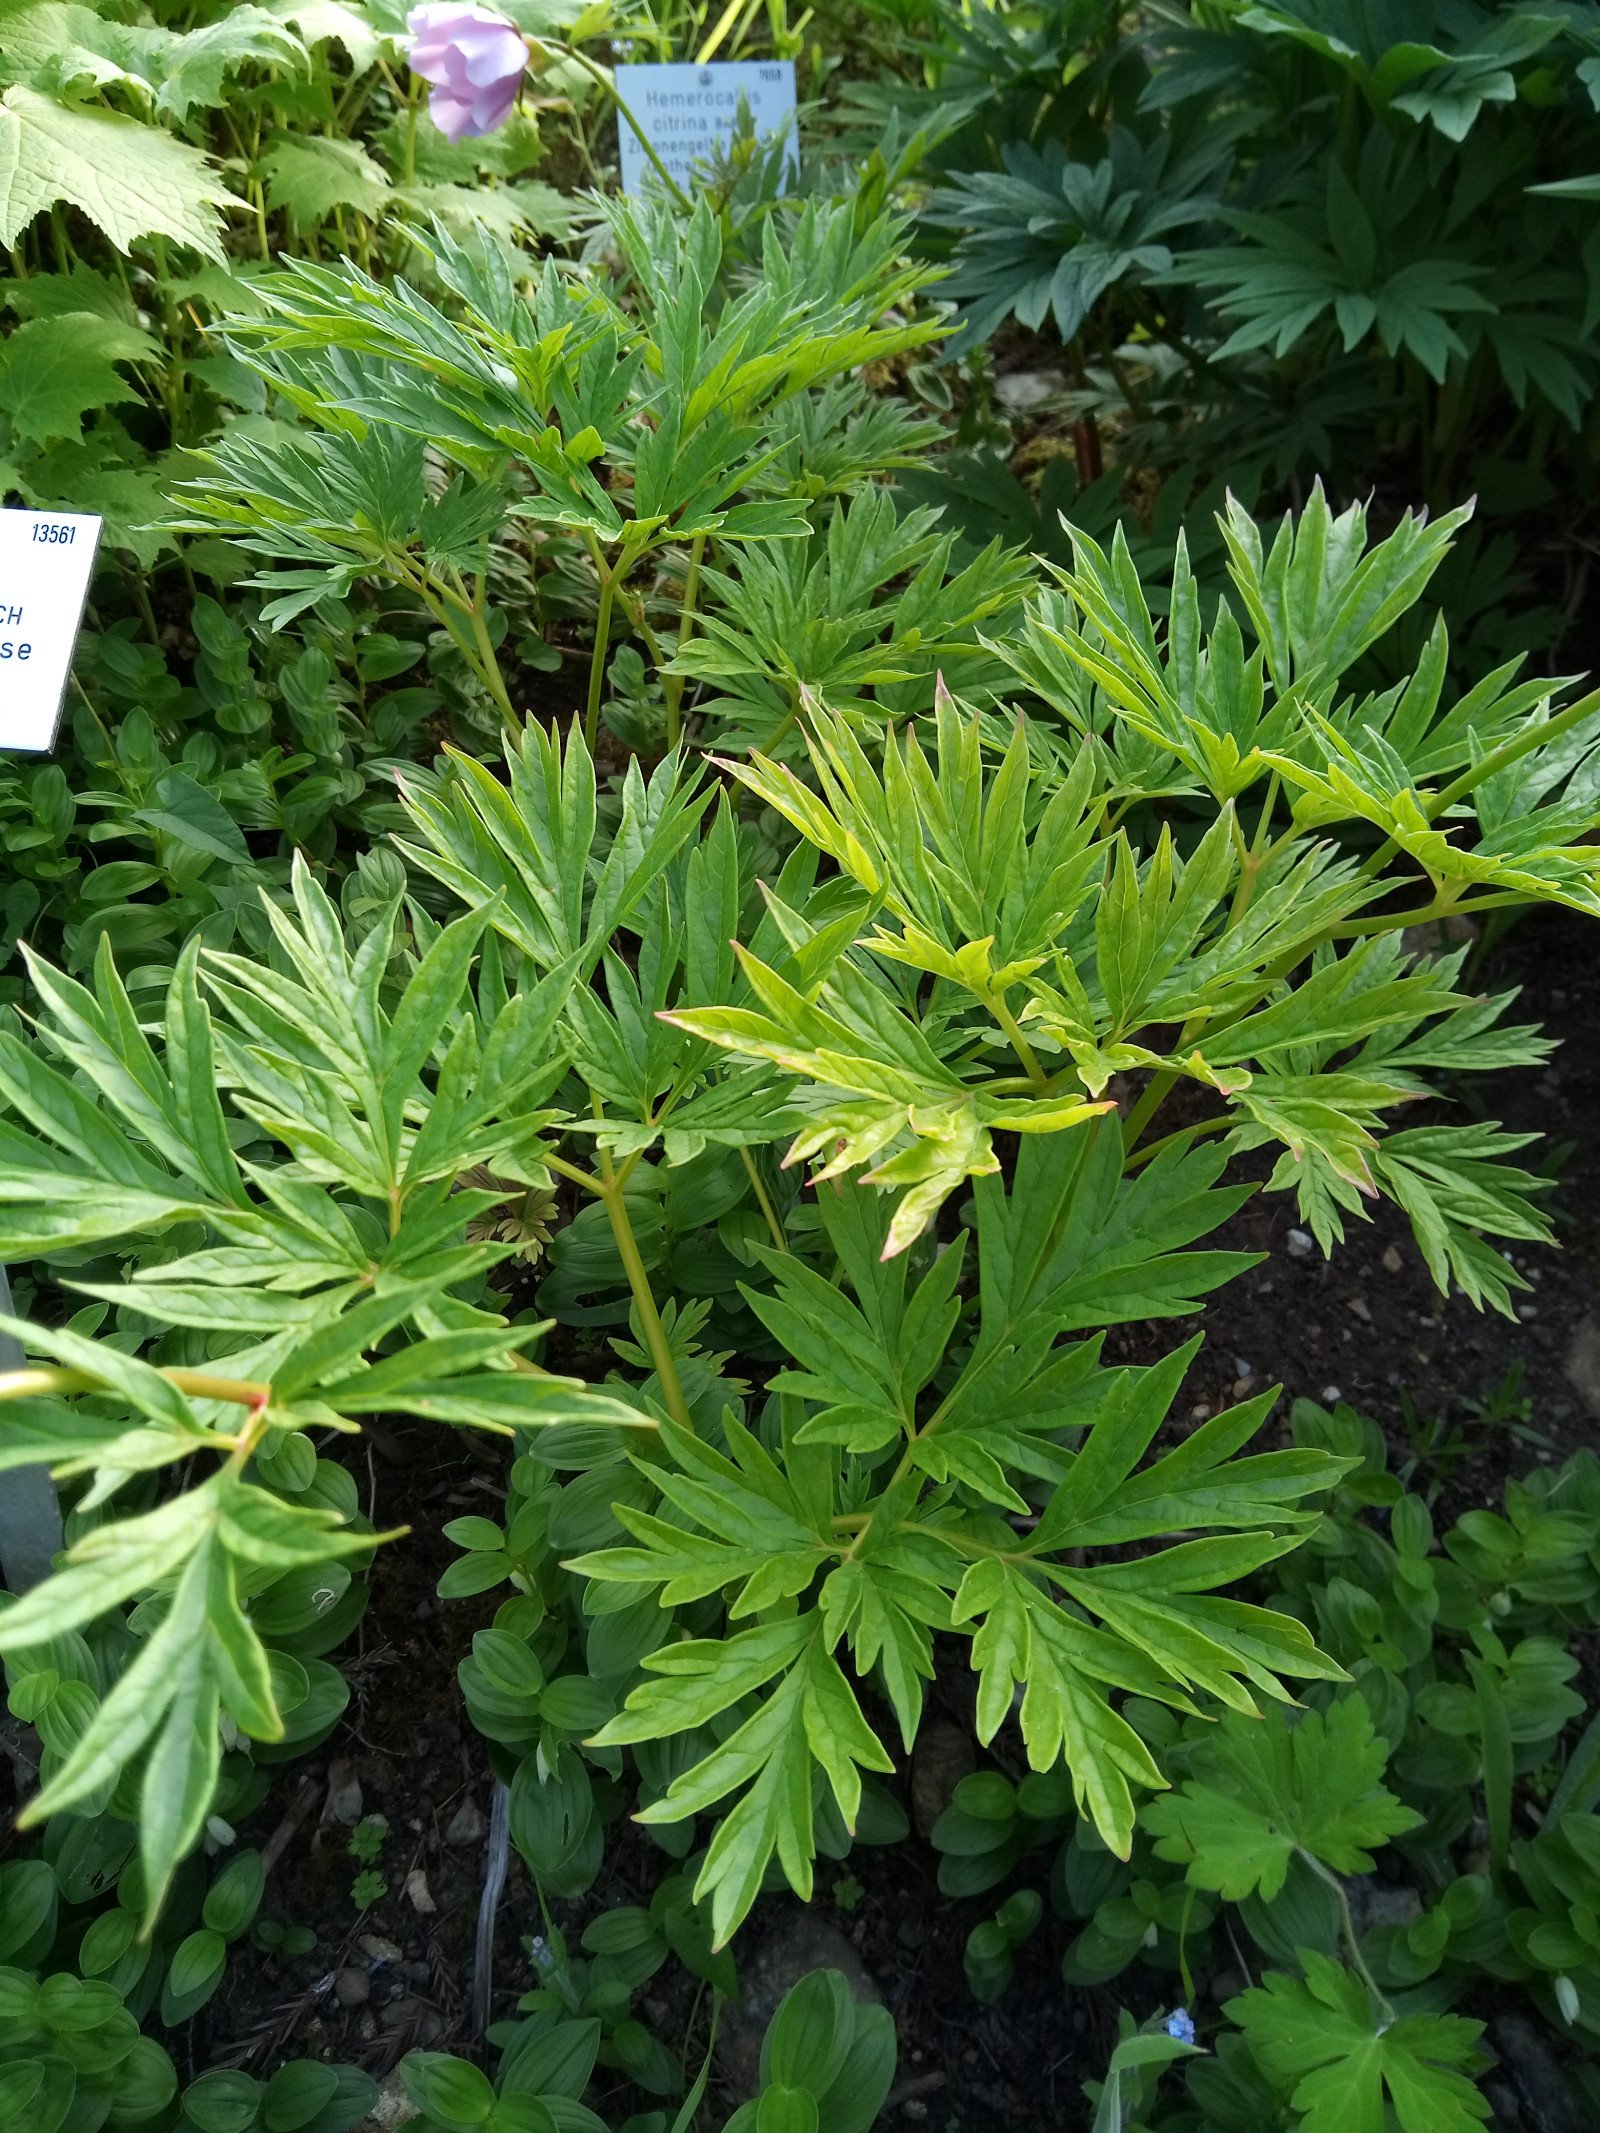 Paeonia anomala  subsp. veitchii - Entire plant